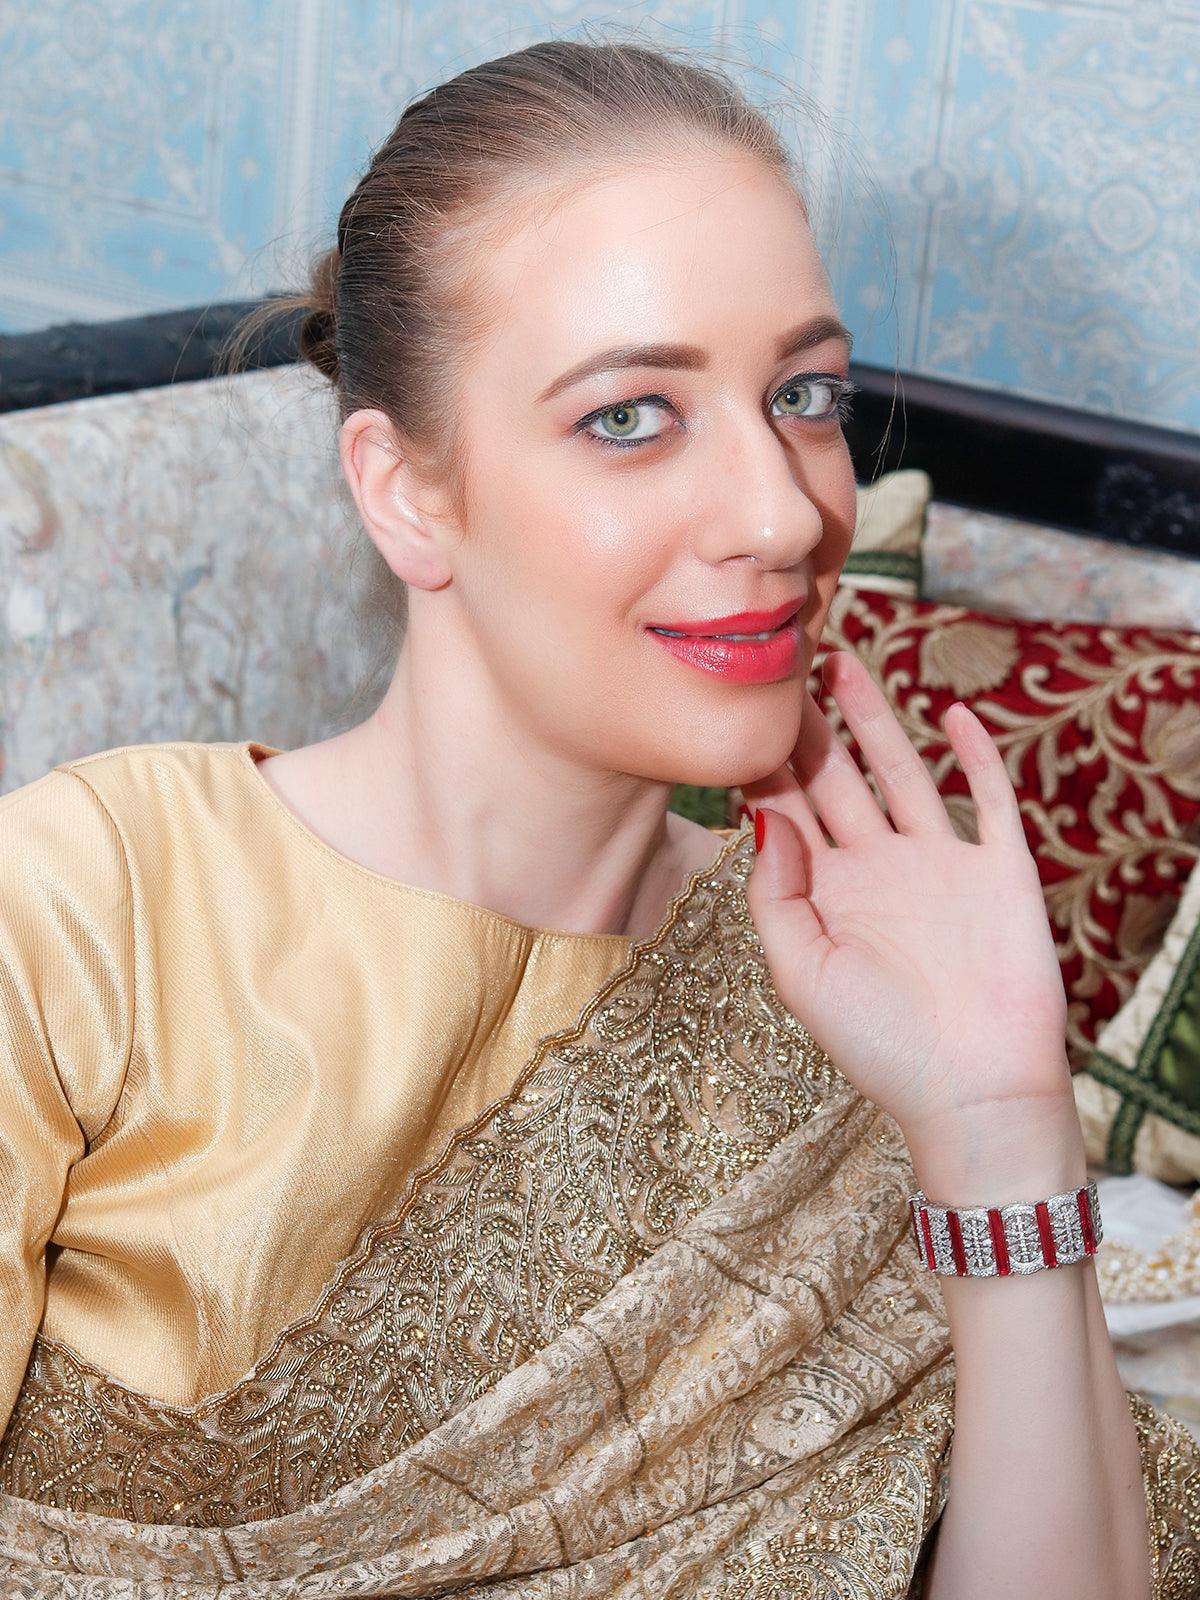 Women's Sparkling German Rhodium Embellished Bracelet - Odette